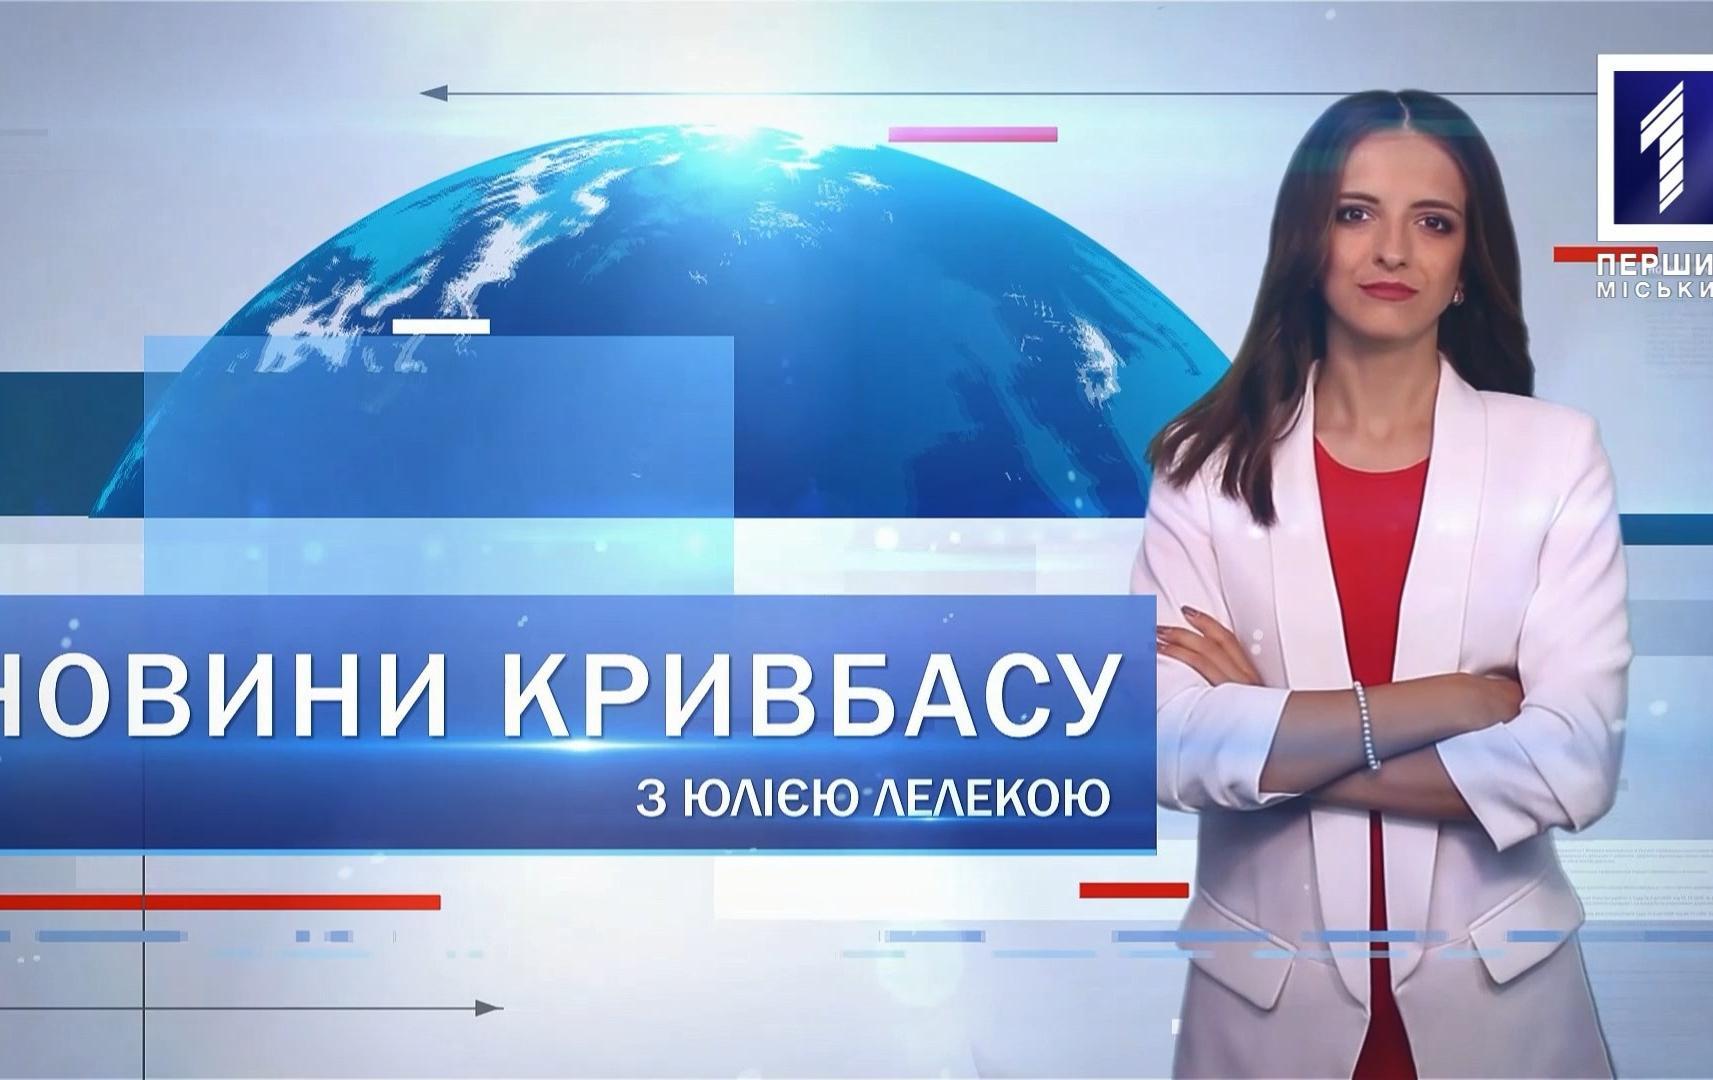 Новини Кривбасу 3 вересня: вакцинація, заморозки, патрулювання